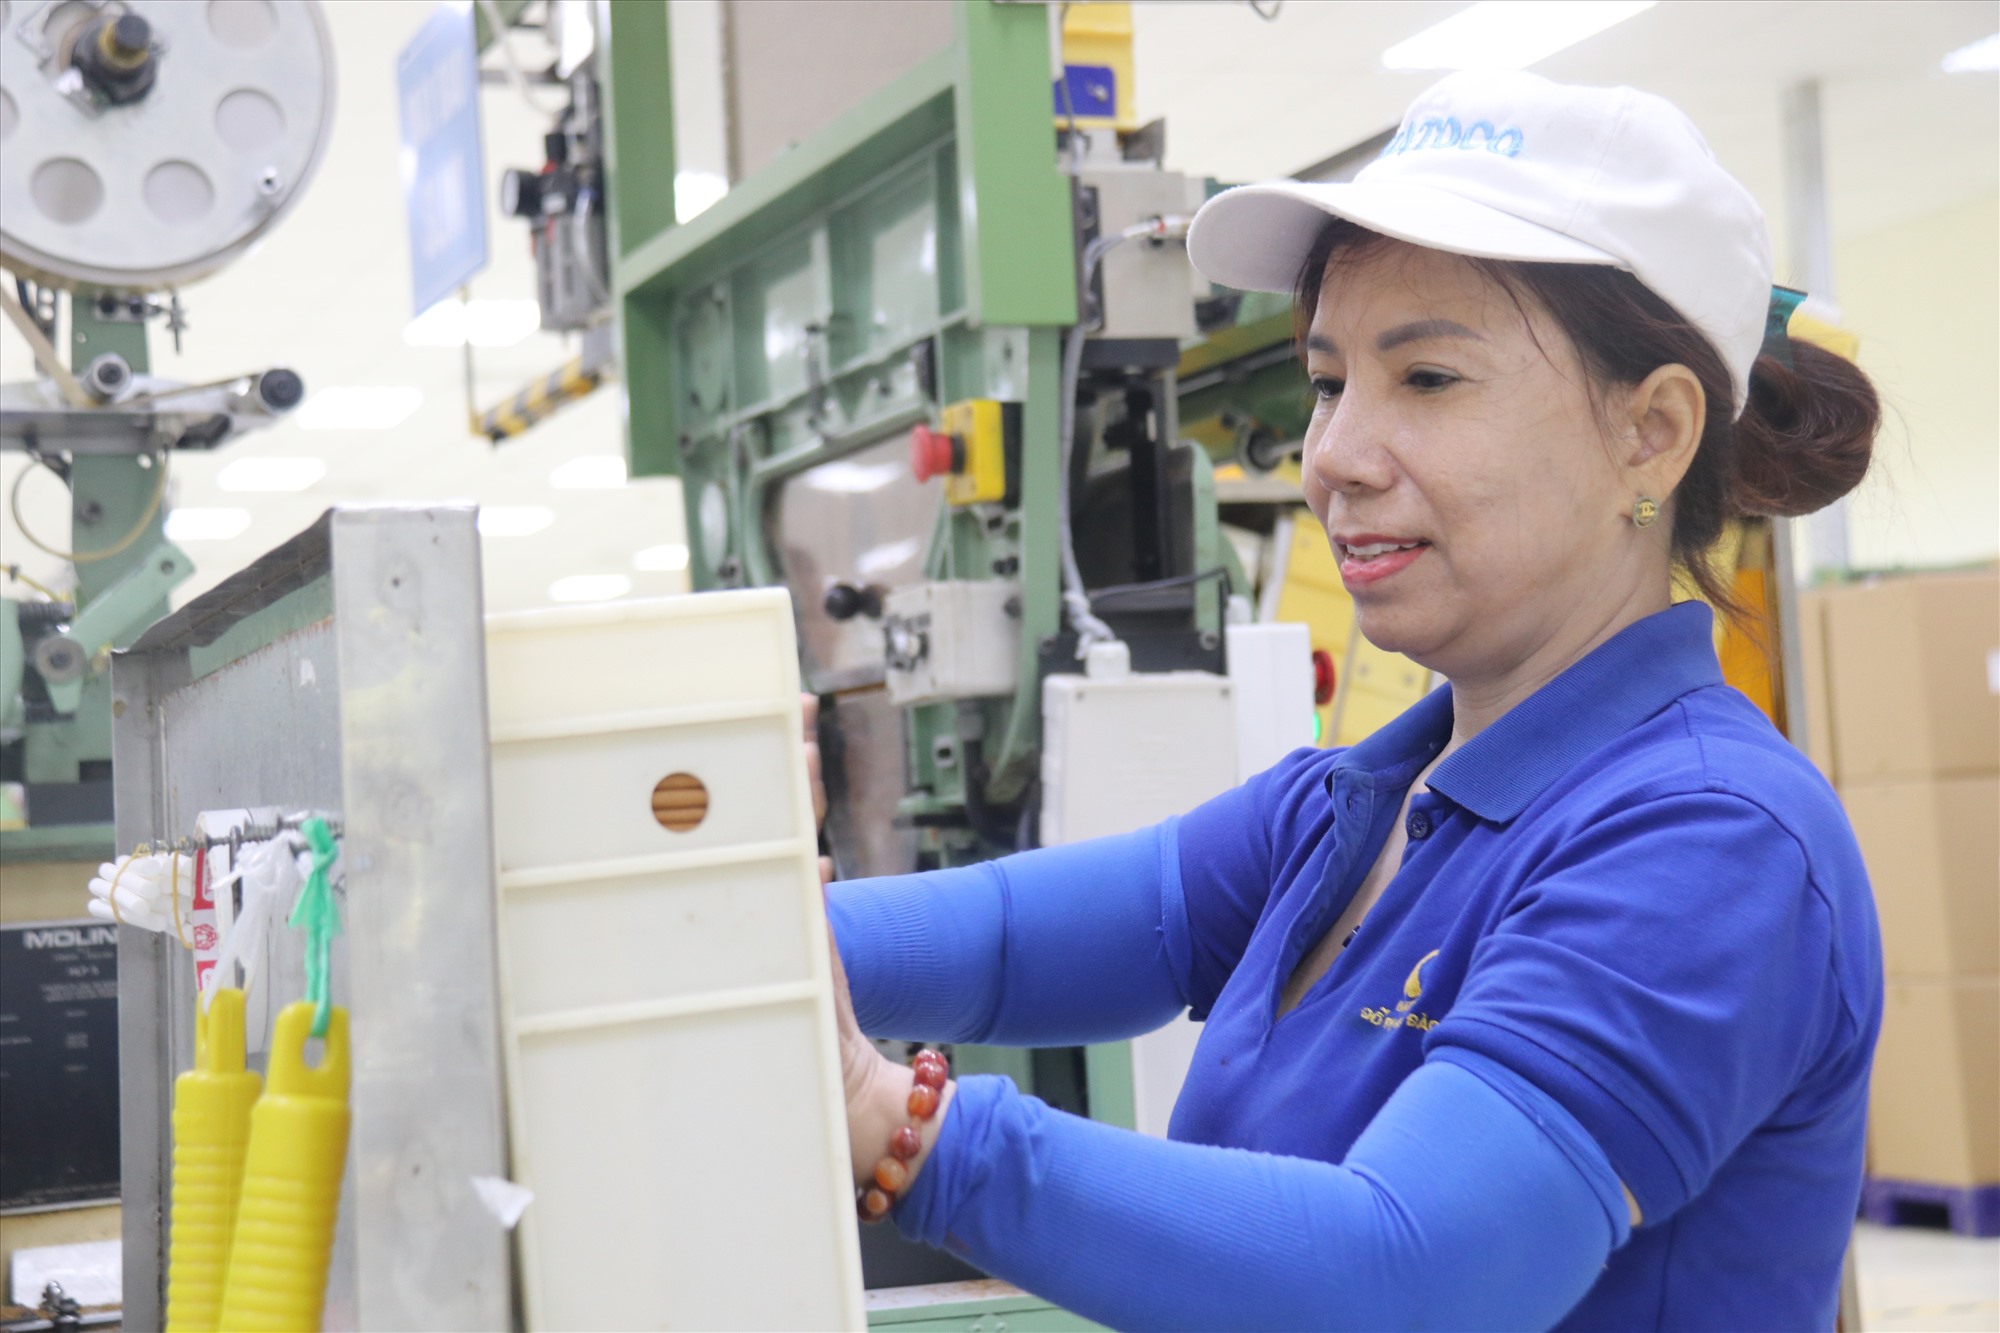 Người lao động Khatoco phấn khởi khi về nhà máy mới làm việc trong môi trường hiện đại, thoáng mát và chuyên nghiệp hơn. Ảnh: Phương Linh